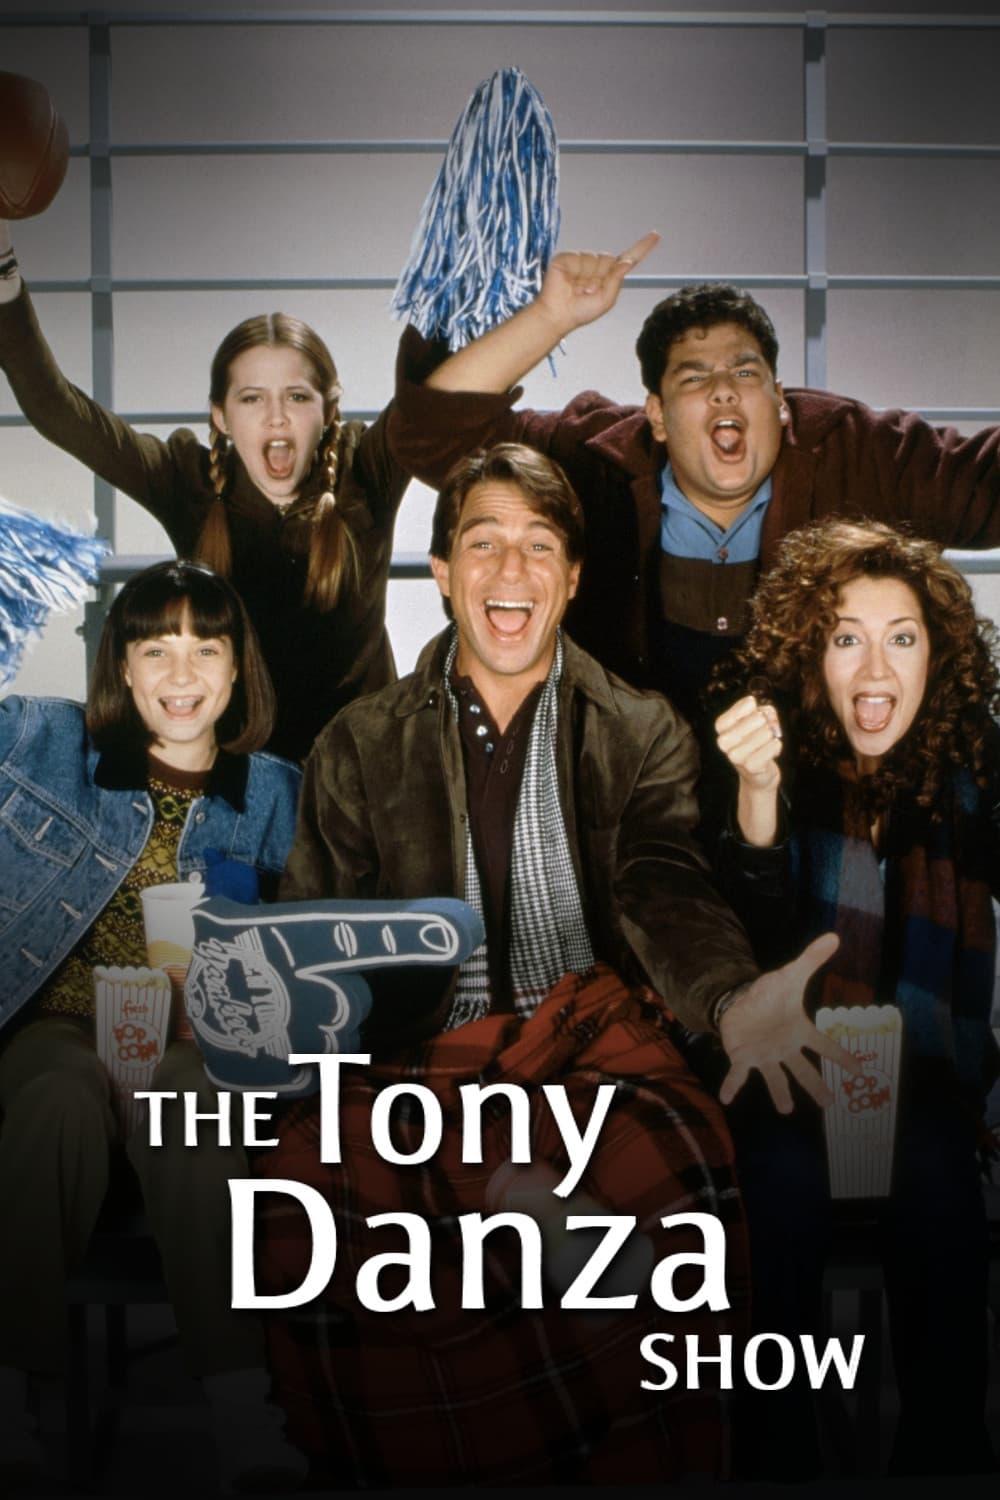 The Tony Danza Show poster